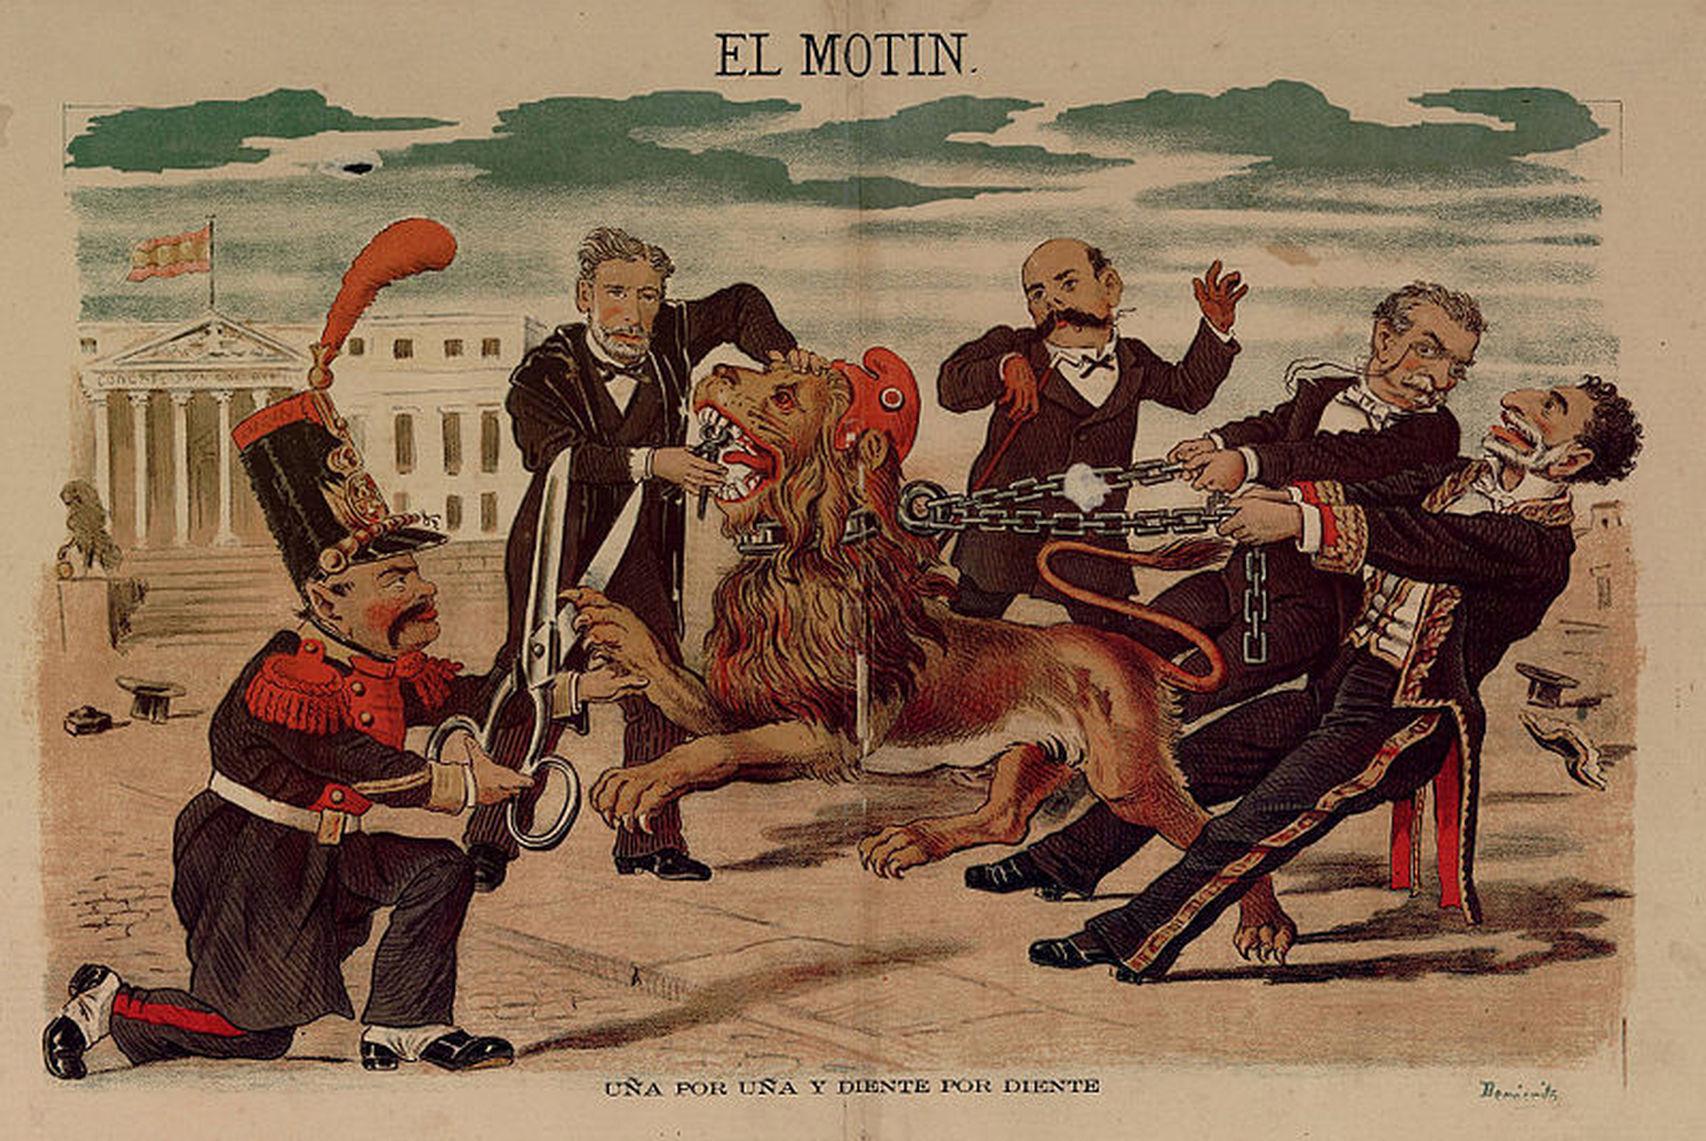 Caricatura de Eduardo Sojo en El Motín, publicada el 16 de octubre de 1881. De izquierda a derecha: Becerra, Montero Ríos, Castelar, Cánovas y Sagasta.